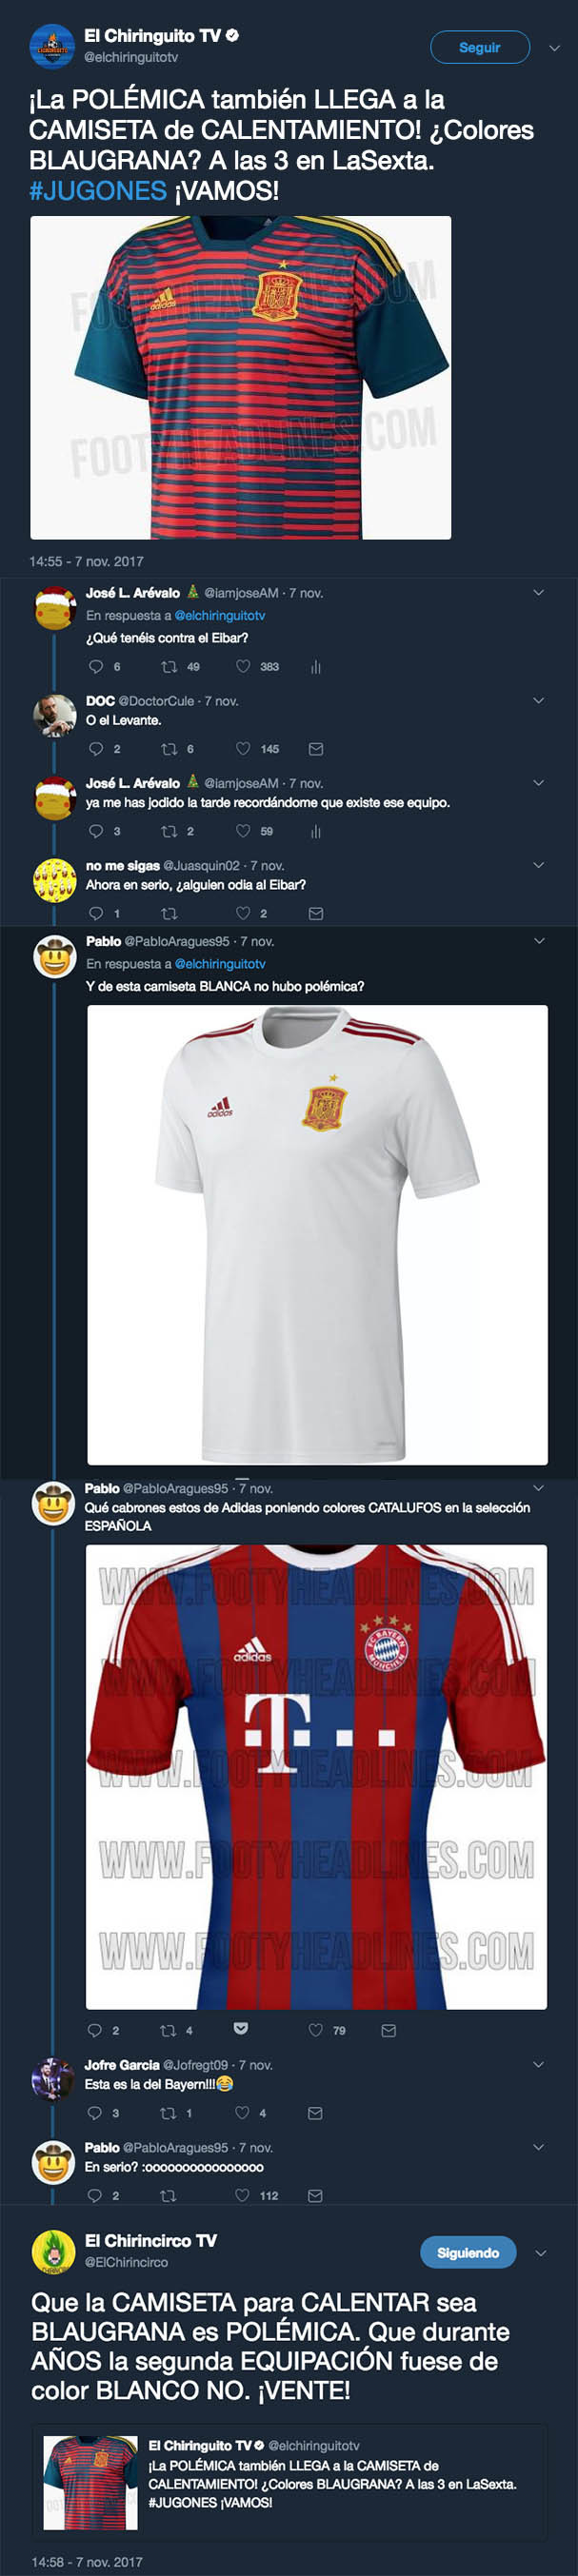 1007123 - 'El Chiringuito' crea polémica con la camiseta de entrenamiento de España al ser blaugrana y se lleva h*stias de respuestas